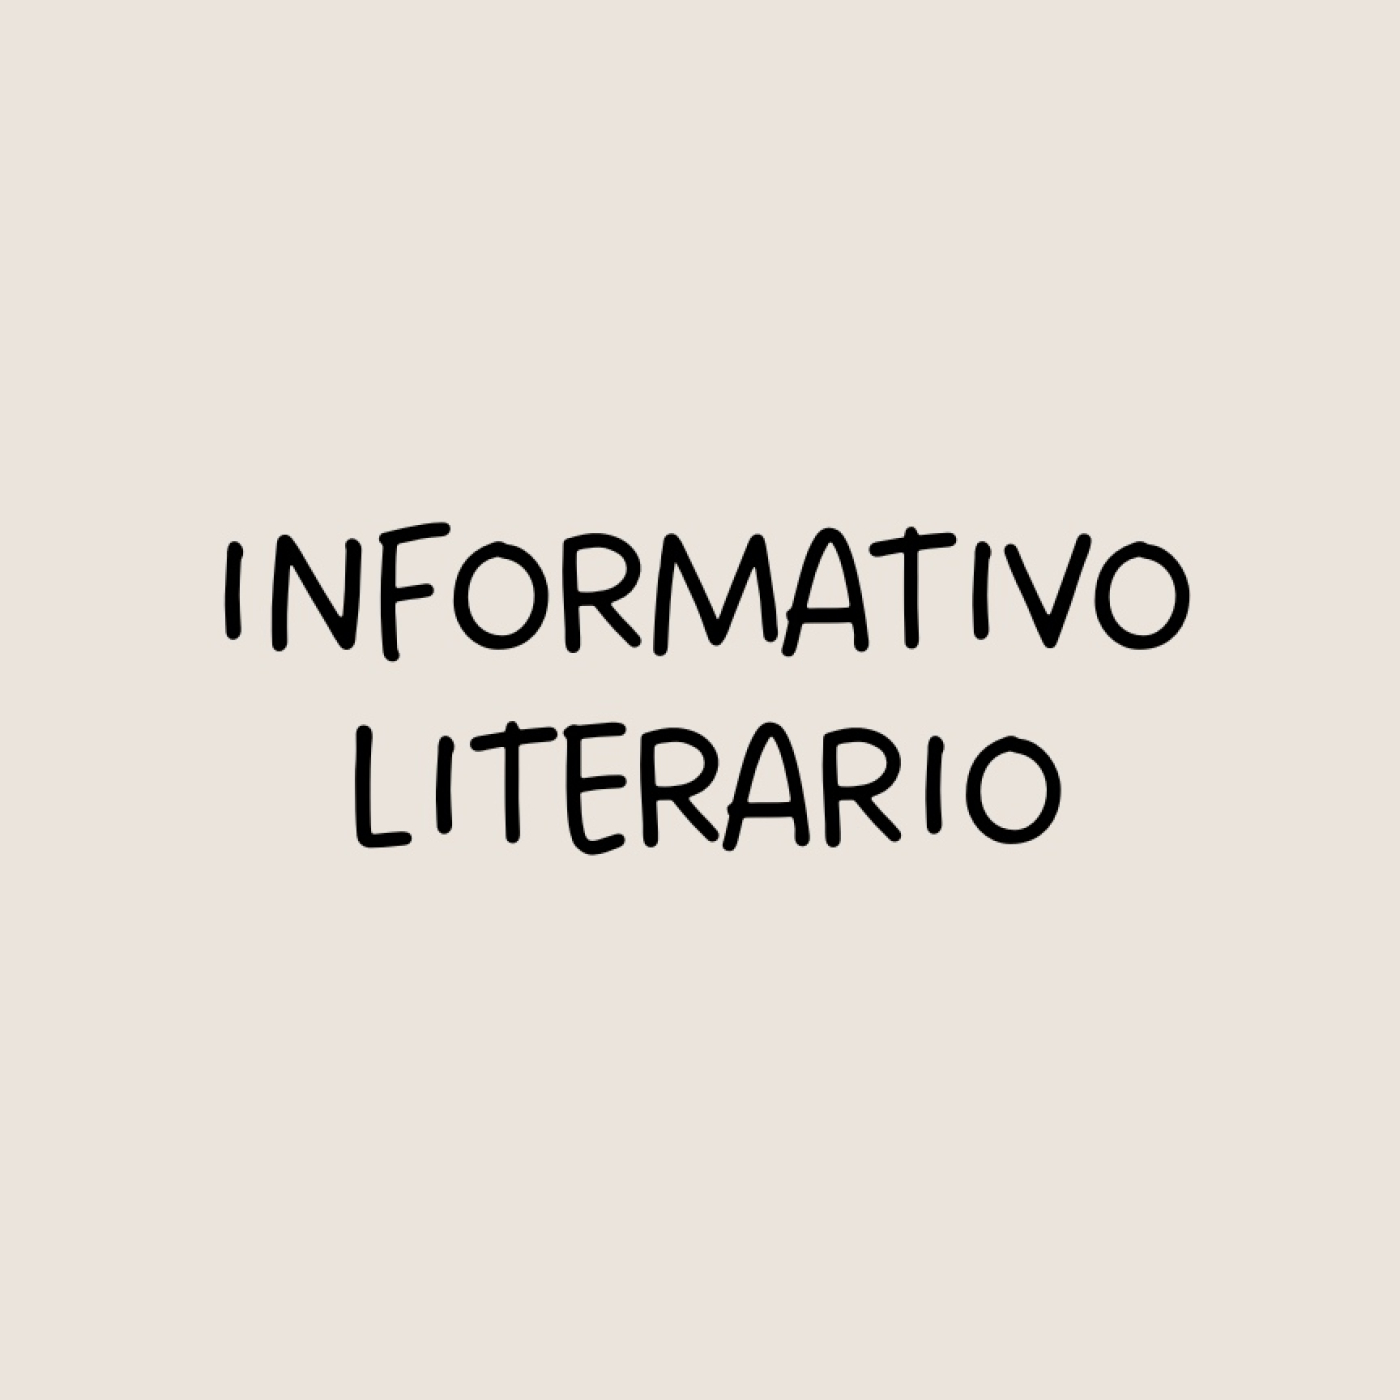 Informativo literario. Muere Ibáñez y optimismo en el sector editorial